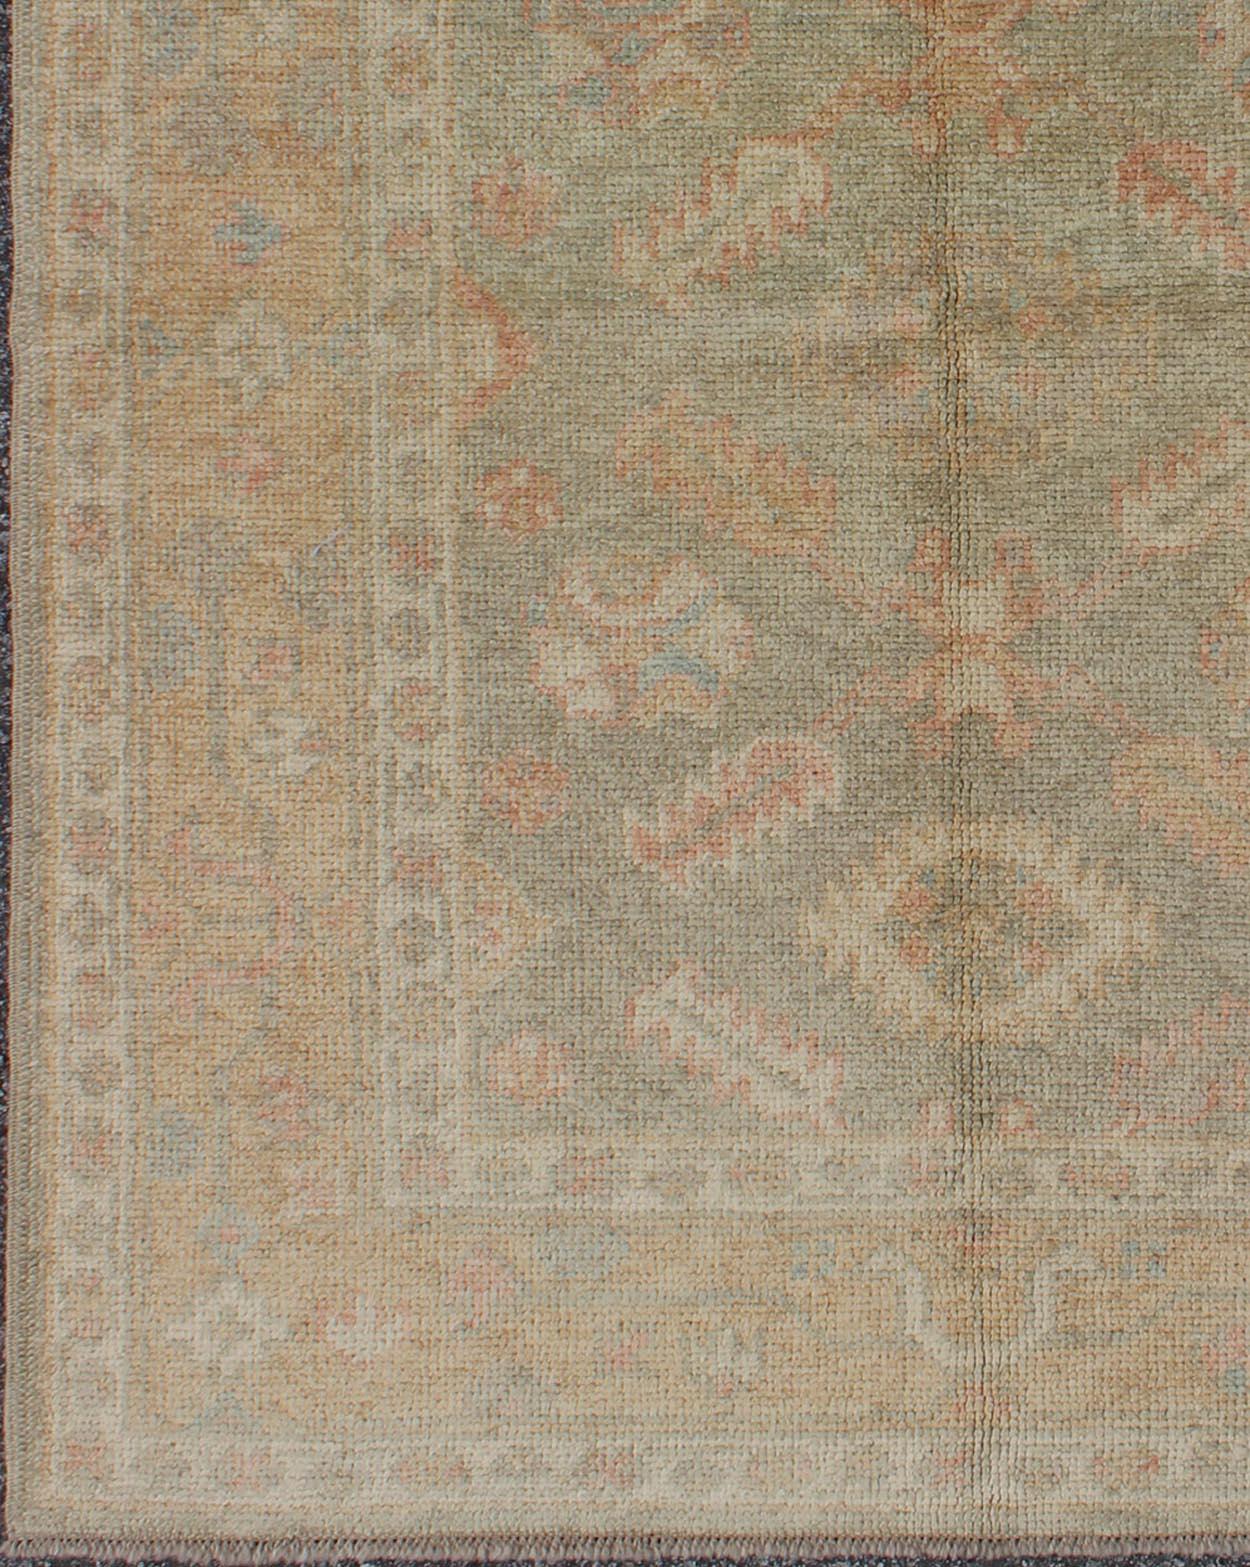 oushak rugs reproduction